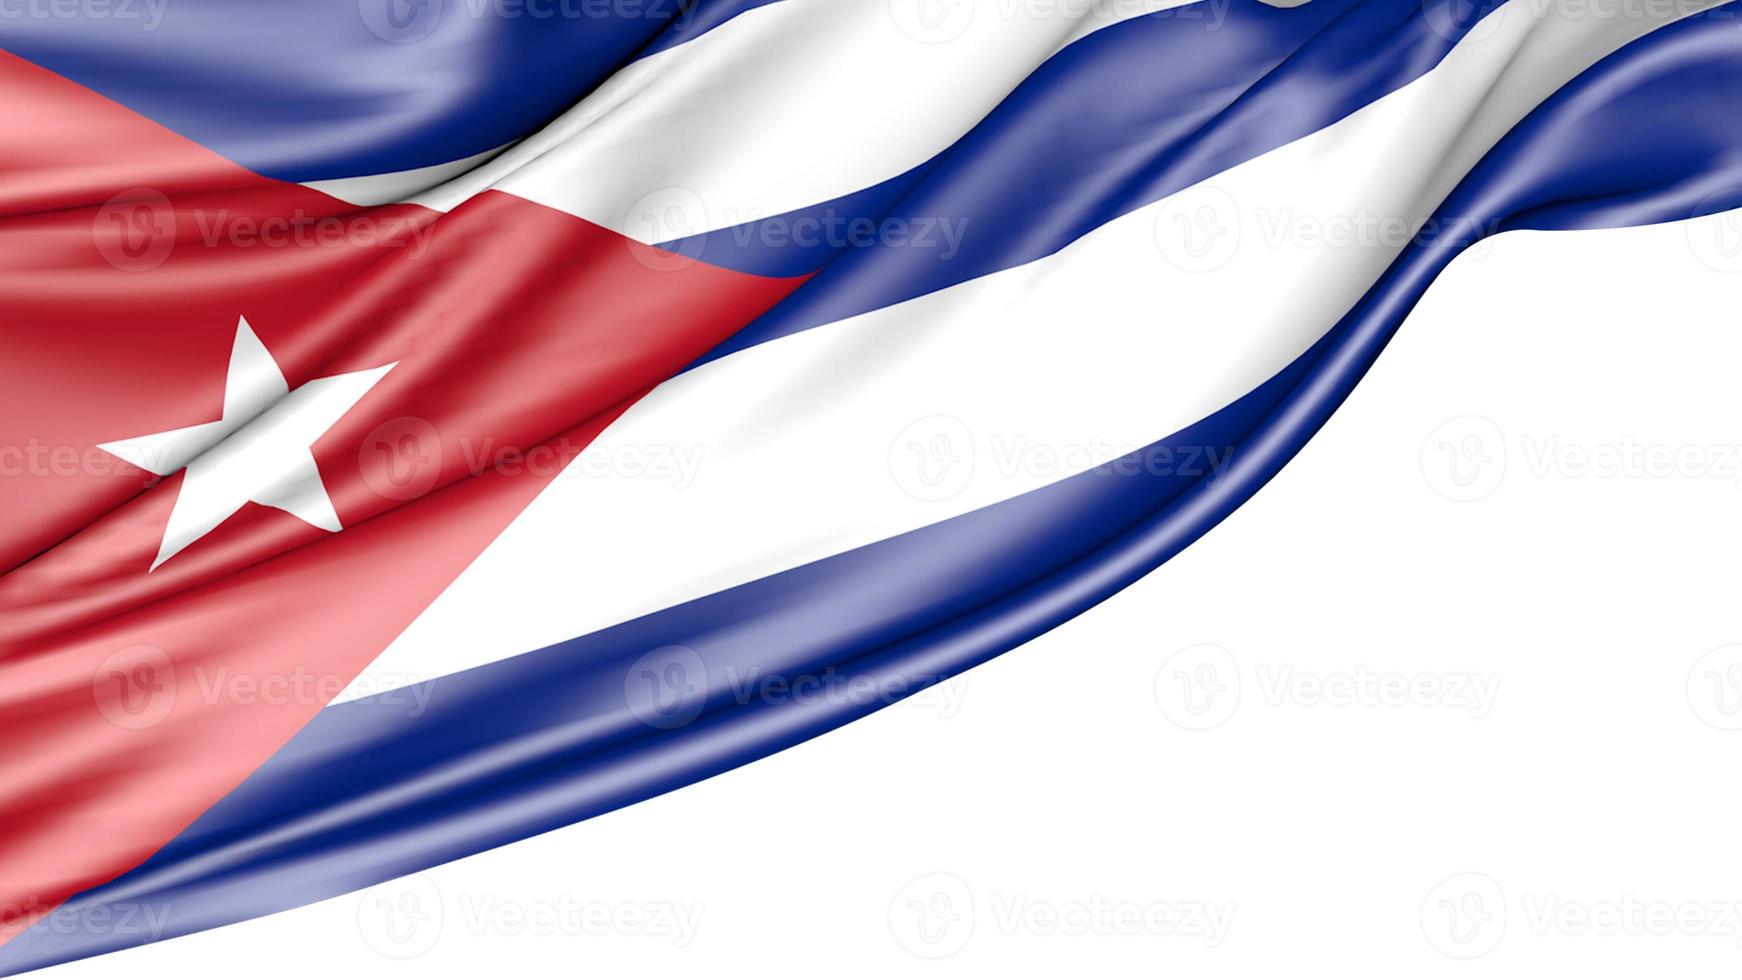 Cuba bandera aislado sobre fondo blanco, ilustración 3d foto